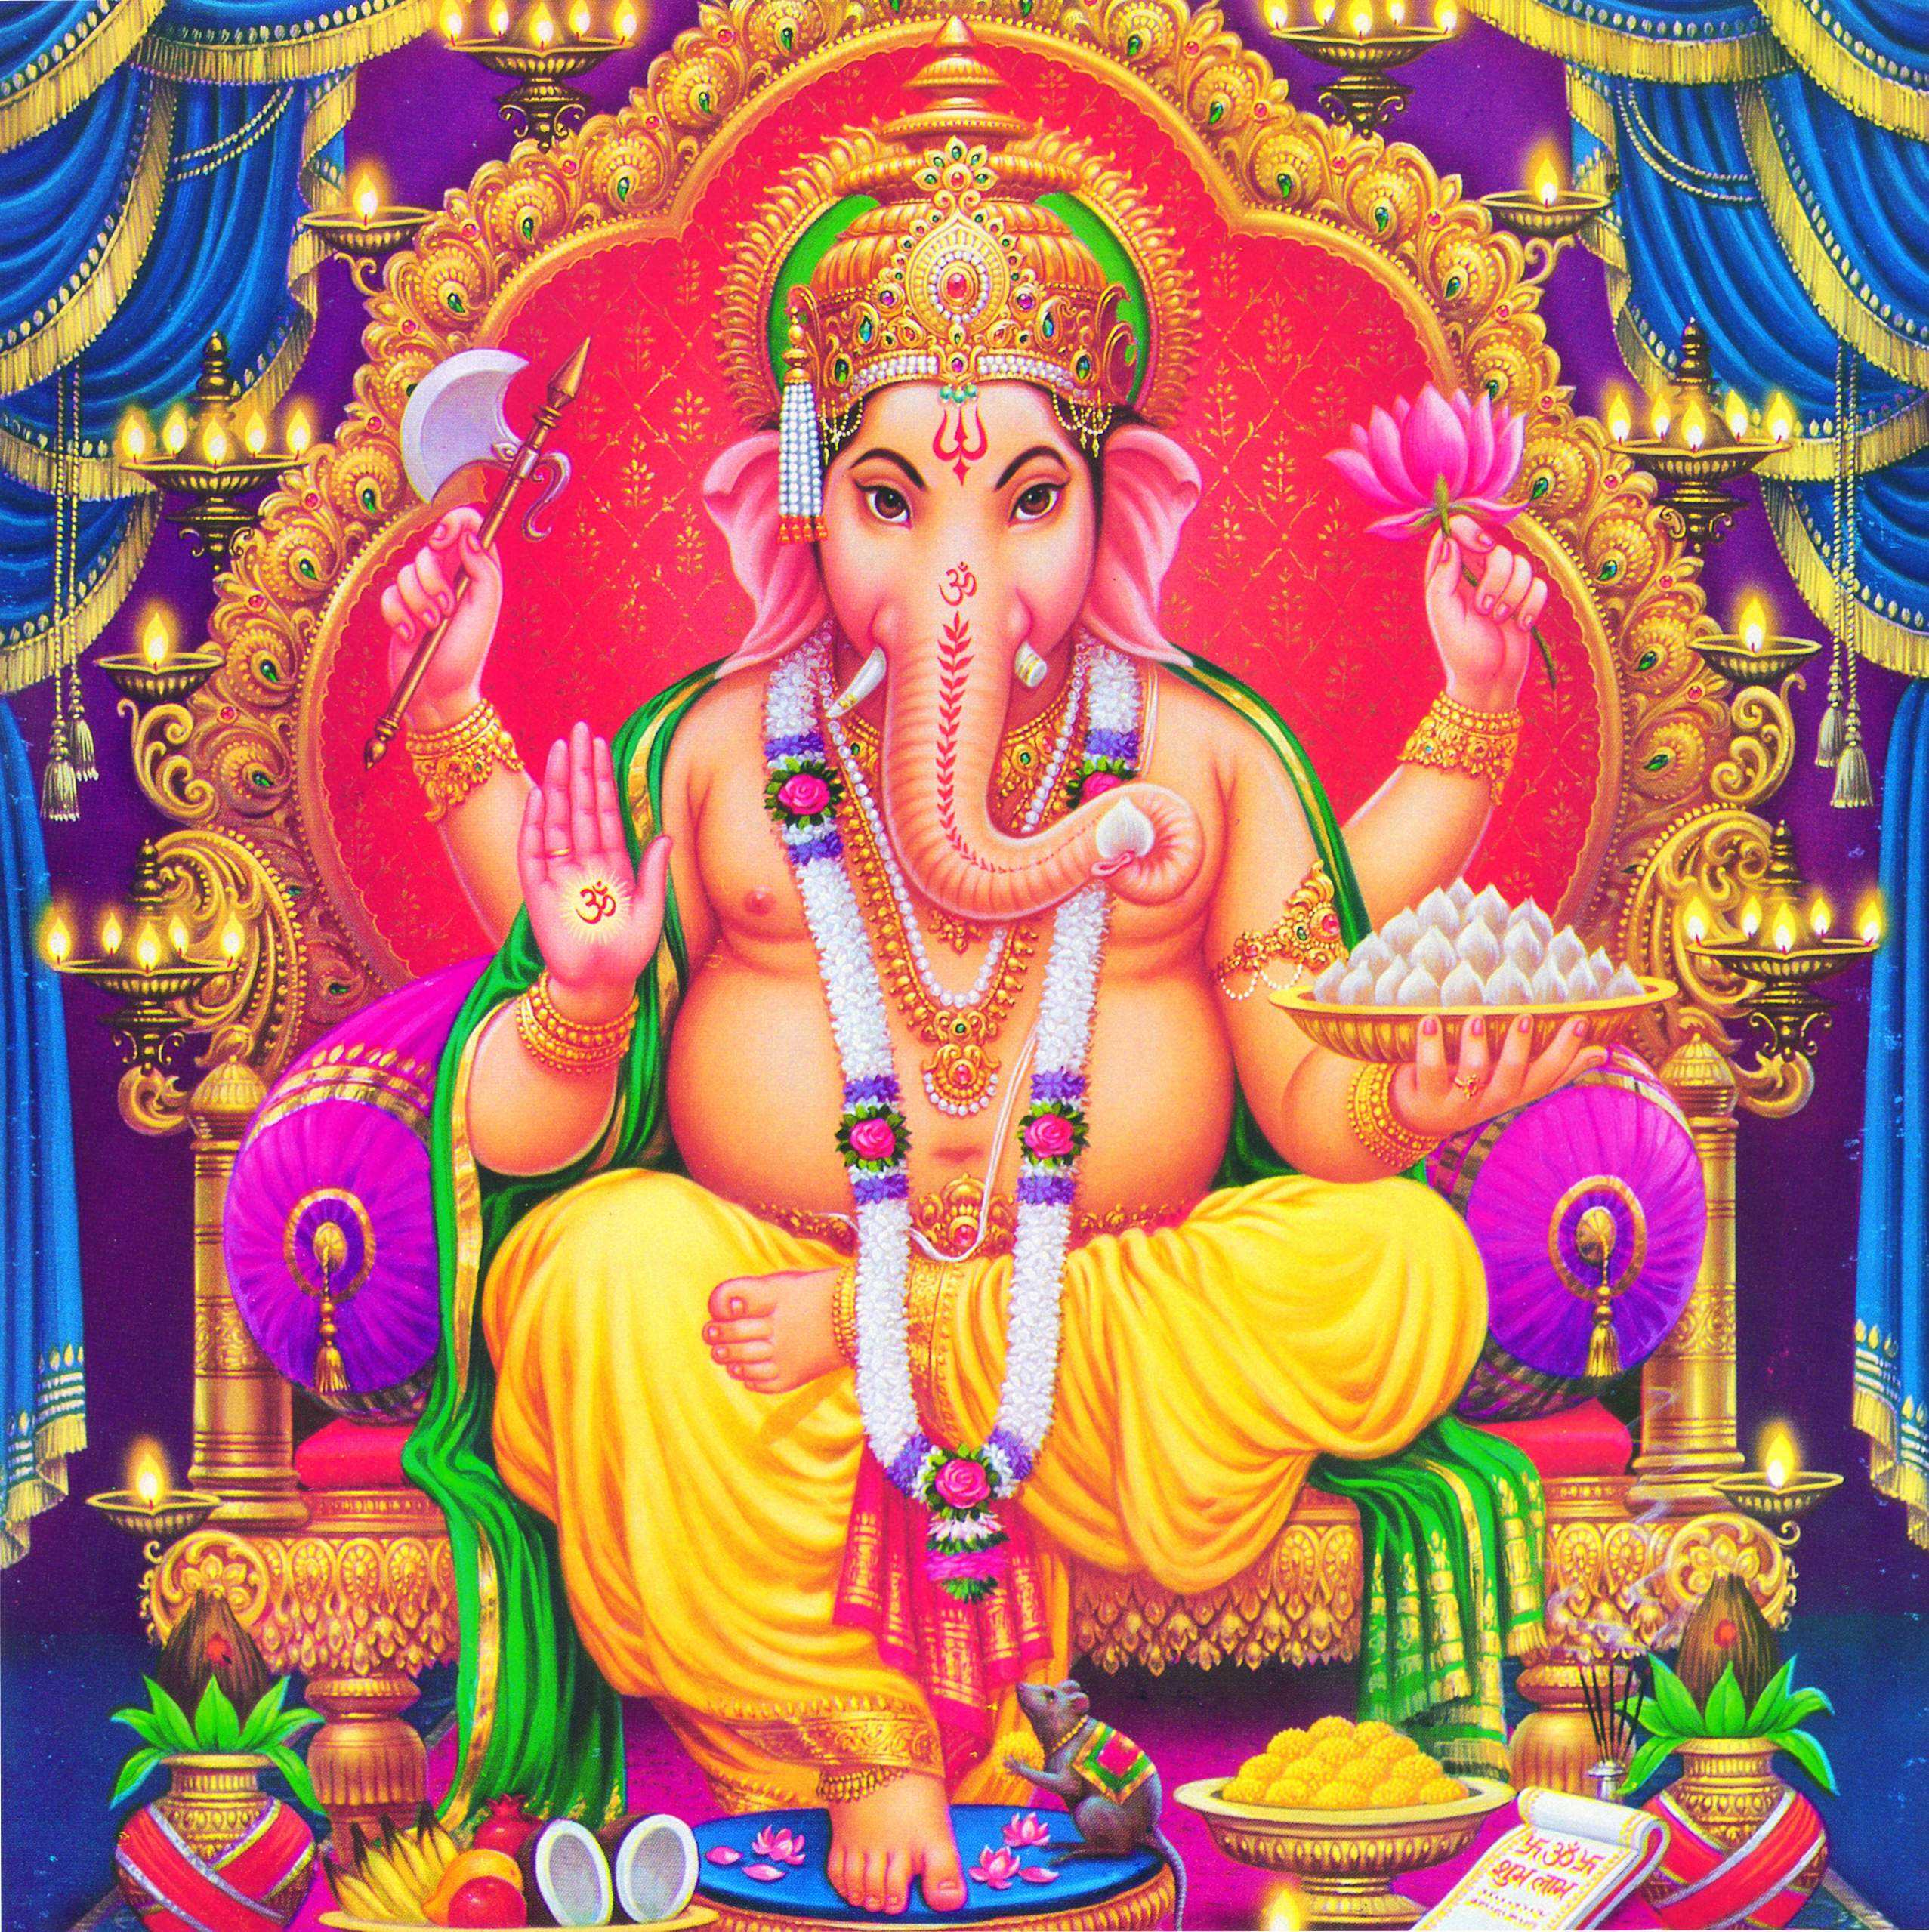 Hindu God Ganesha Image